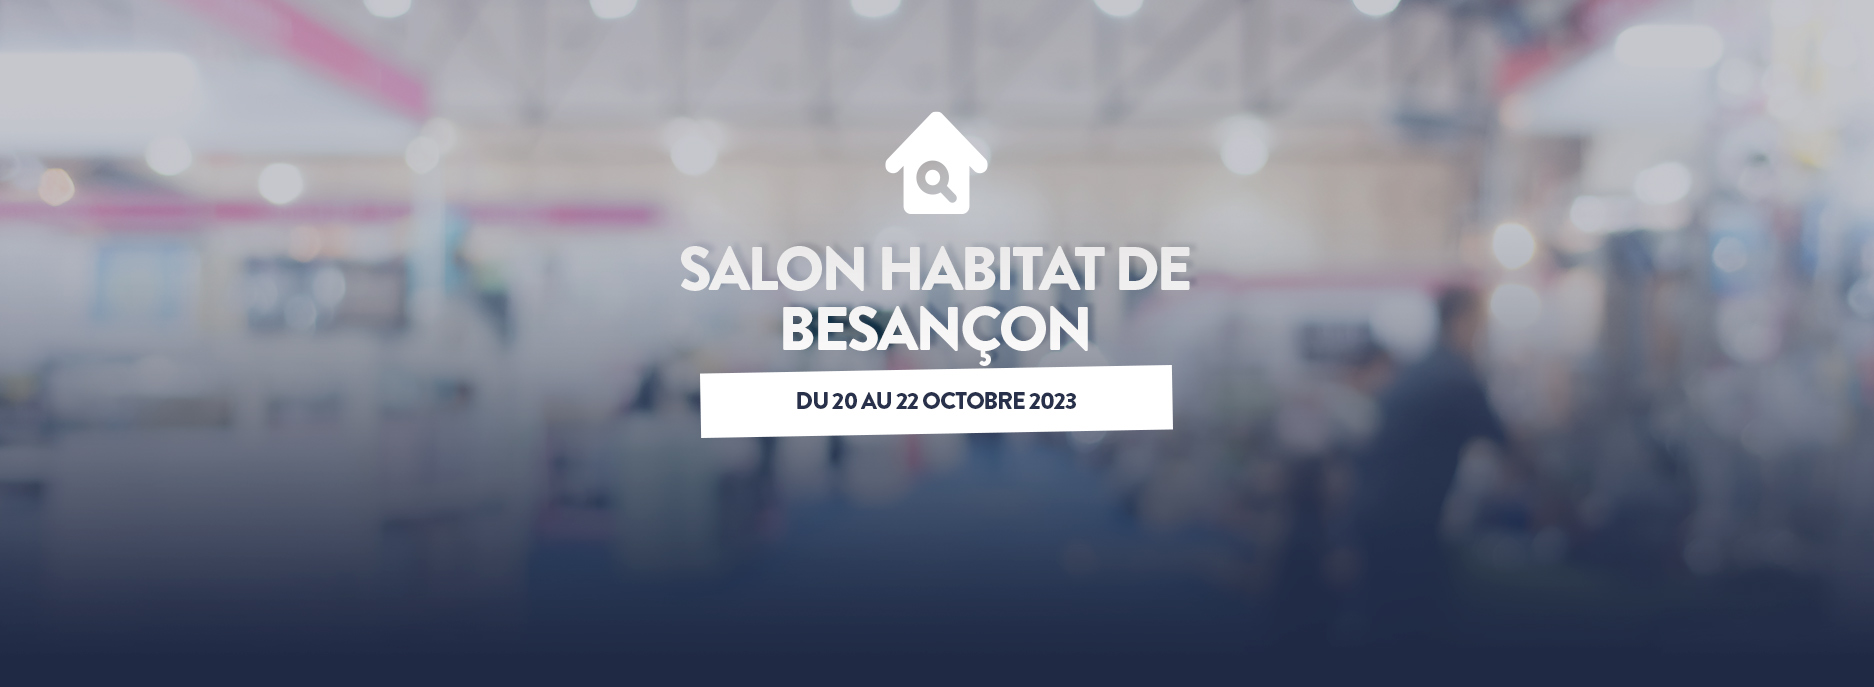 Rendez-vous au Salon Habitat de Besançon